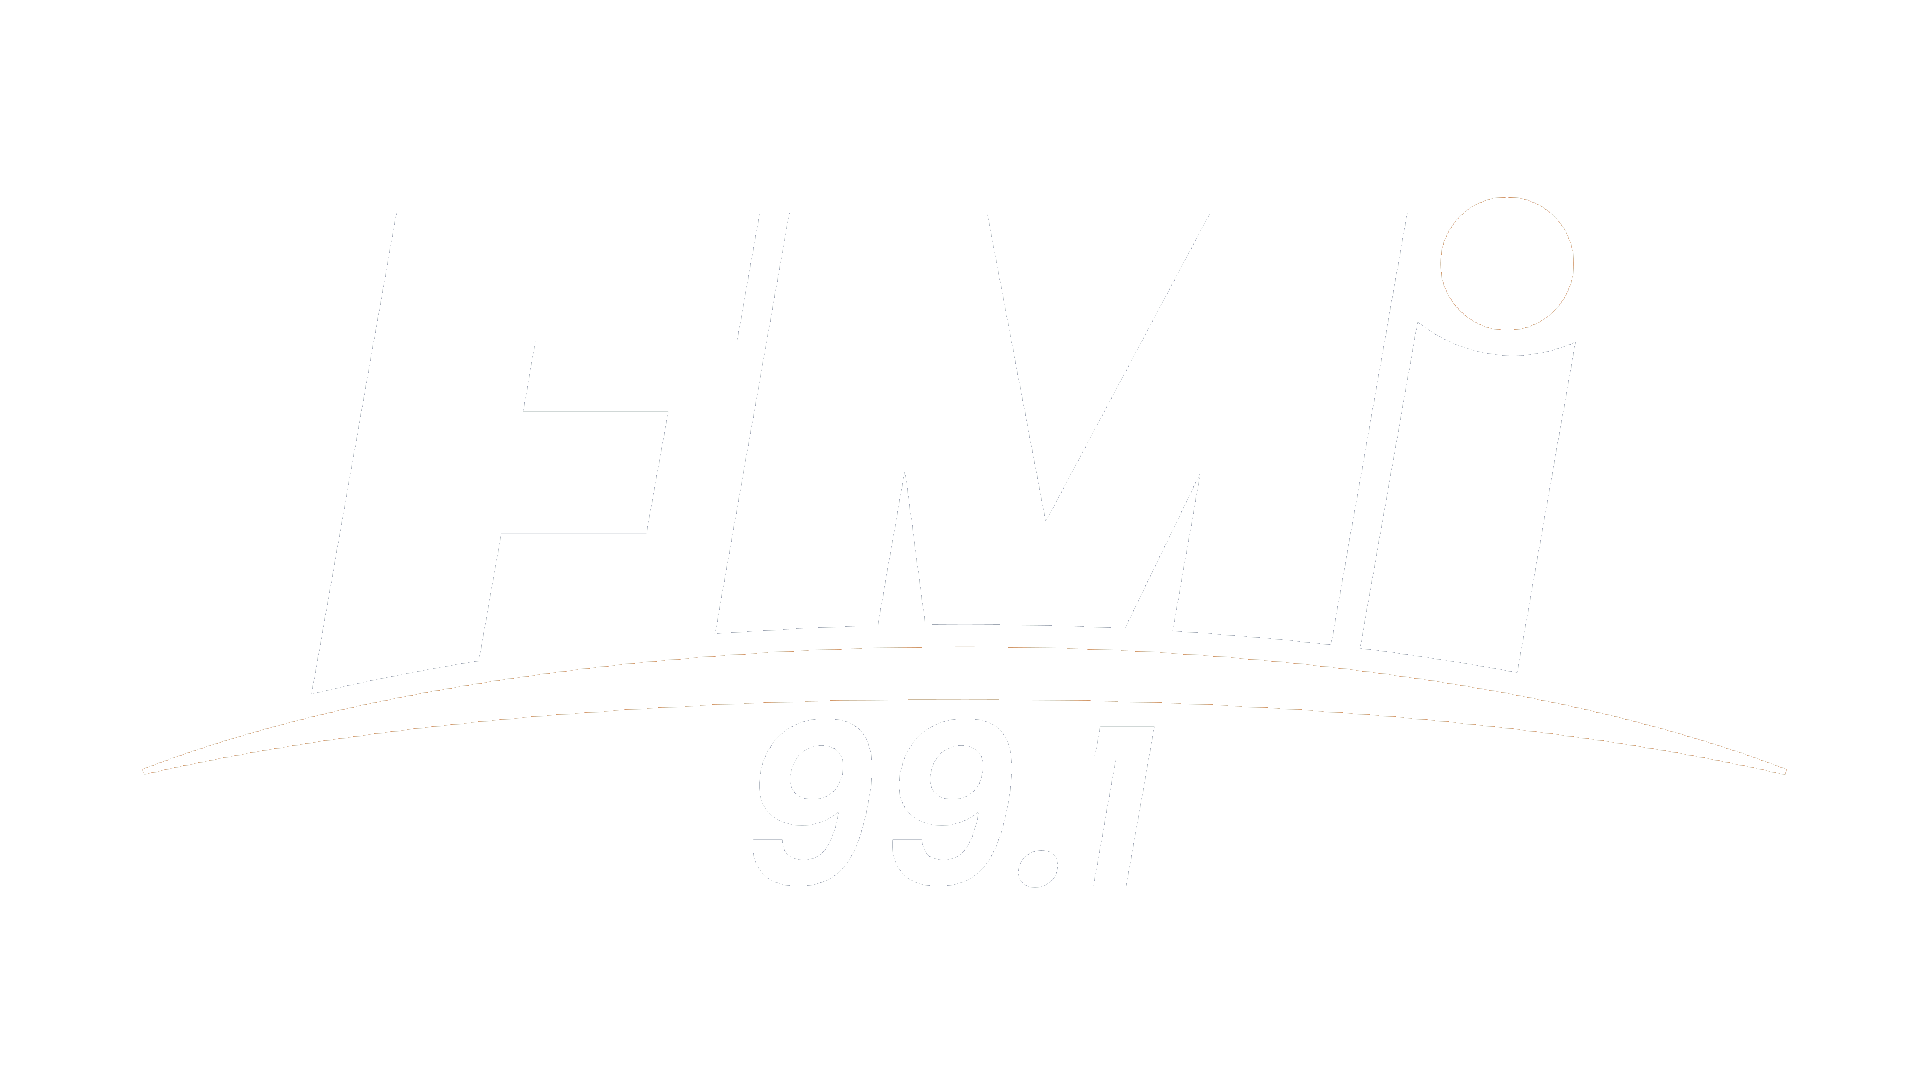 FMI Radio 99.1 Tucumán